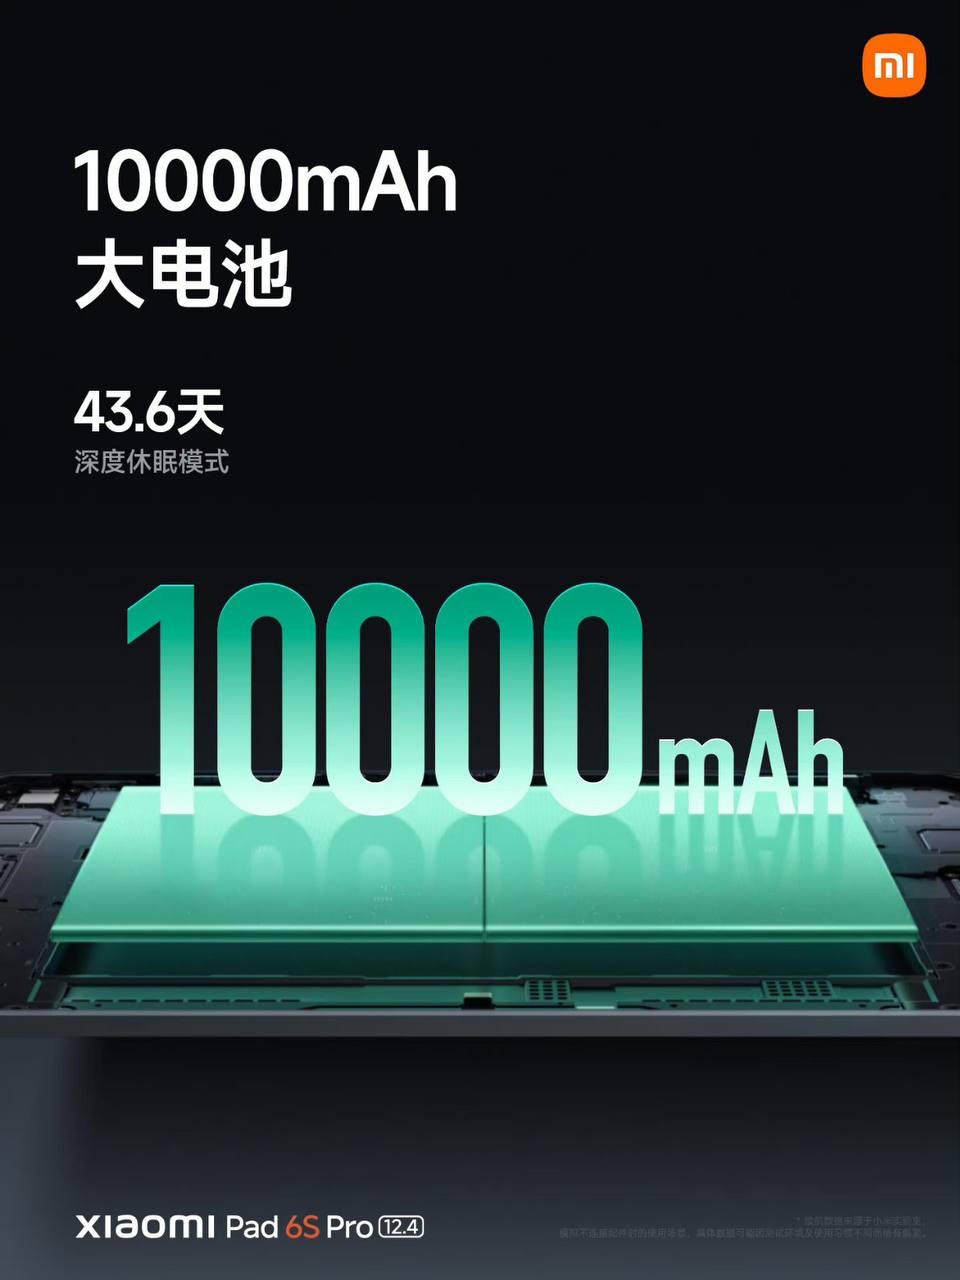 Xiaomi Pad 6s Pro trang bị viên pin 10000 mAh